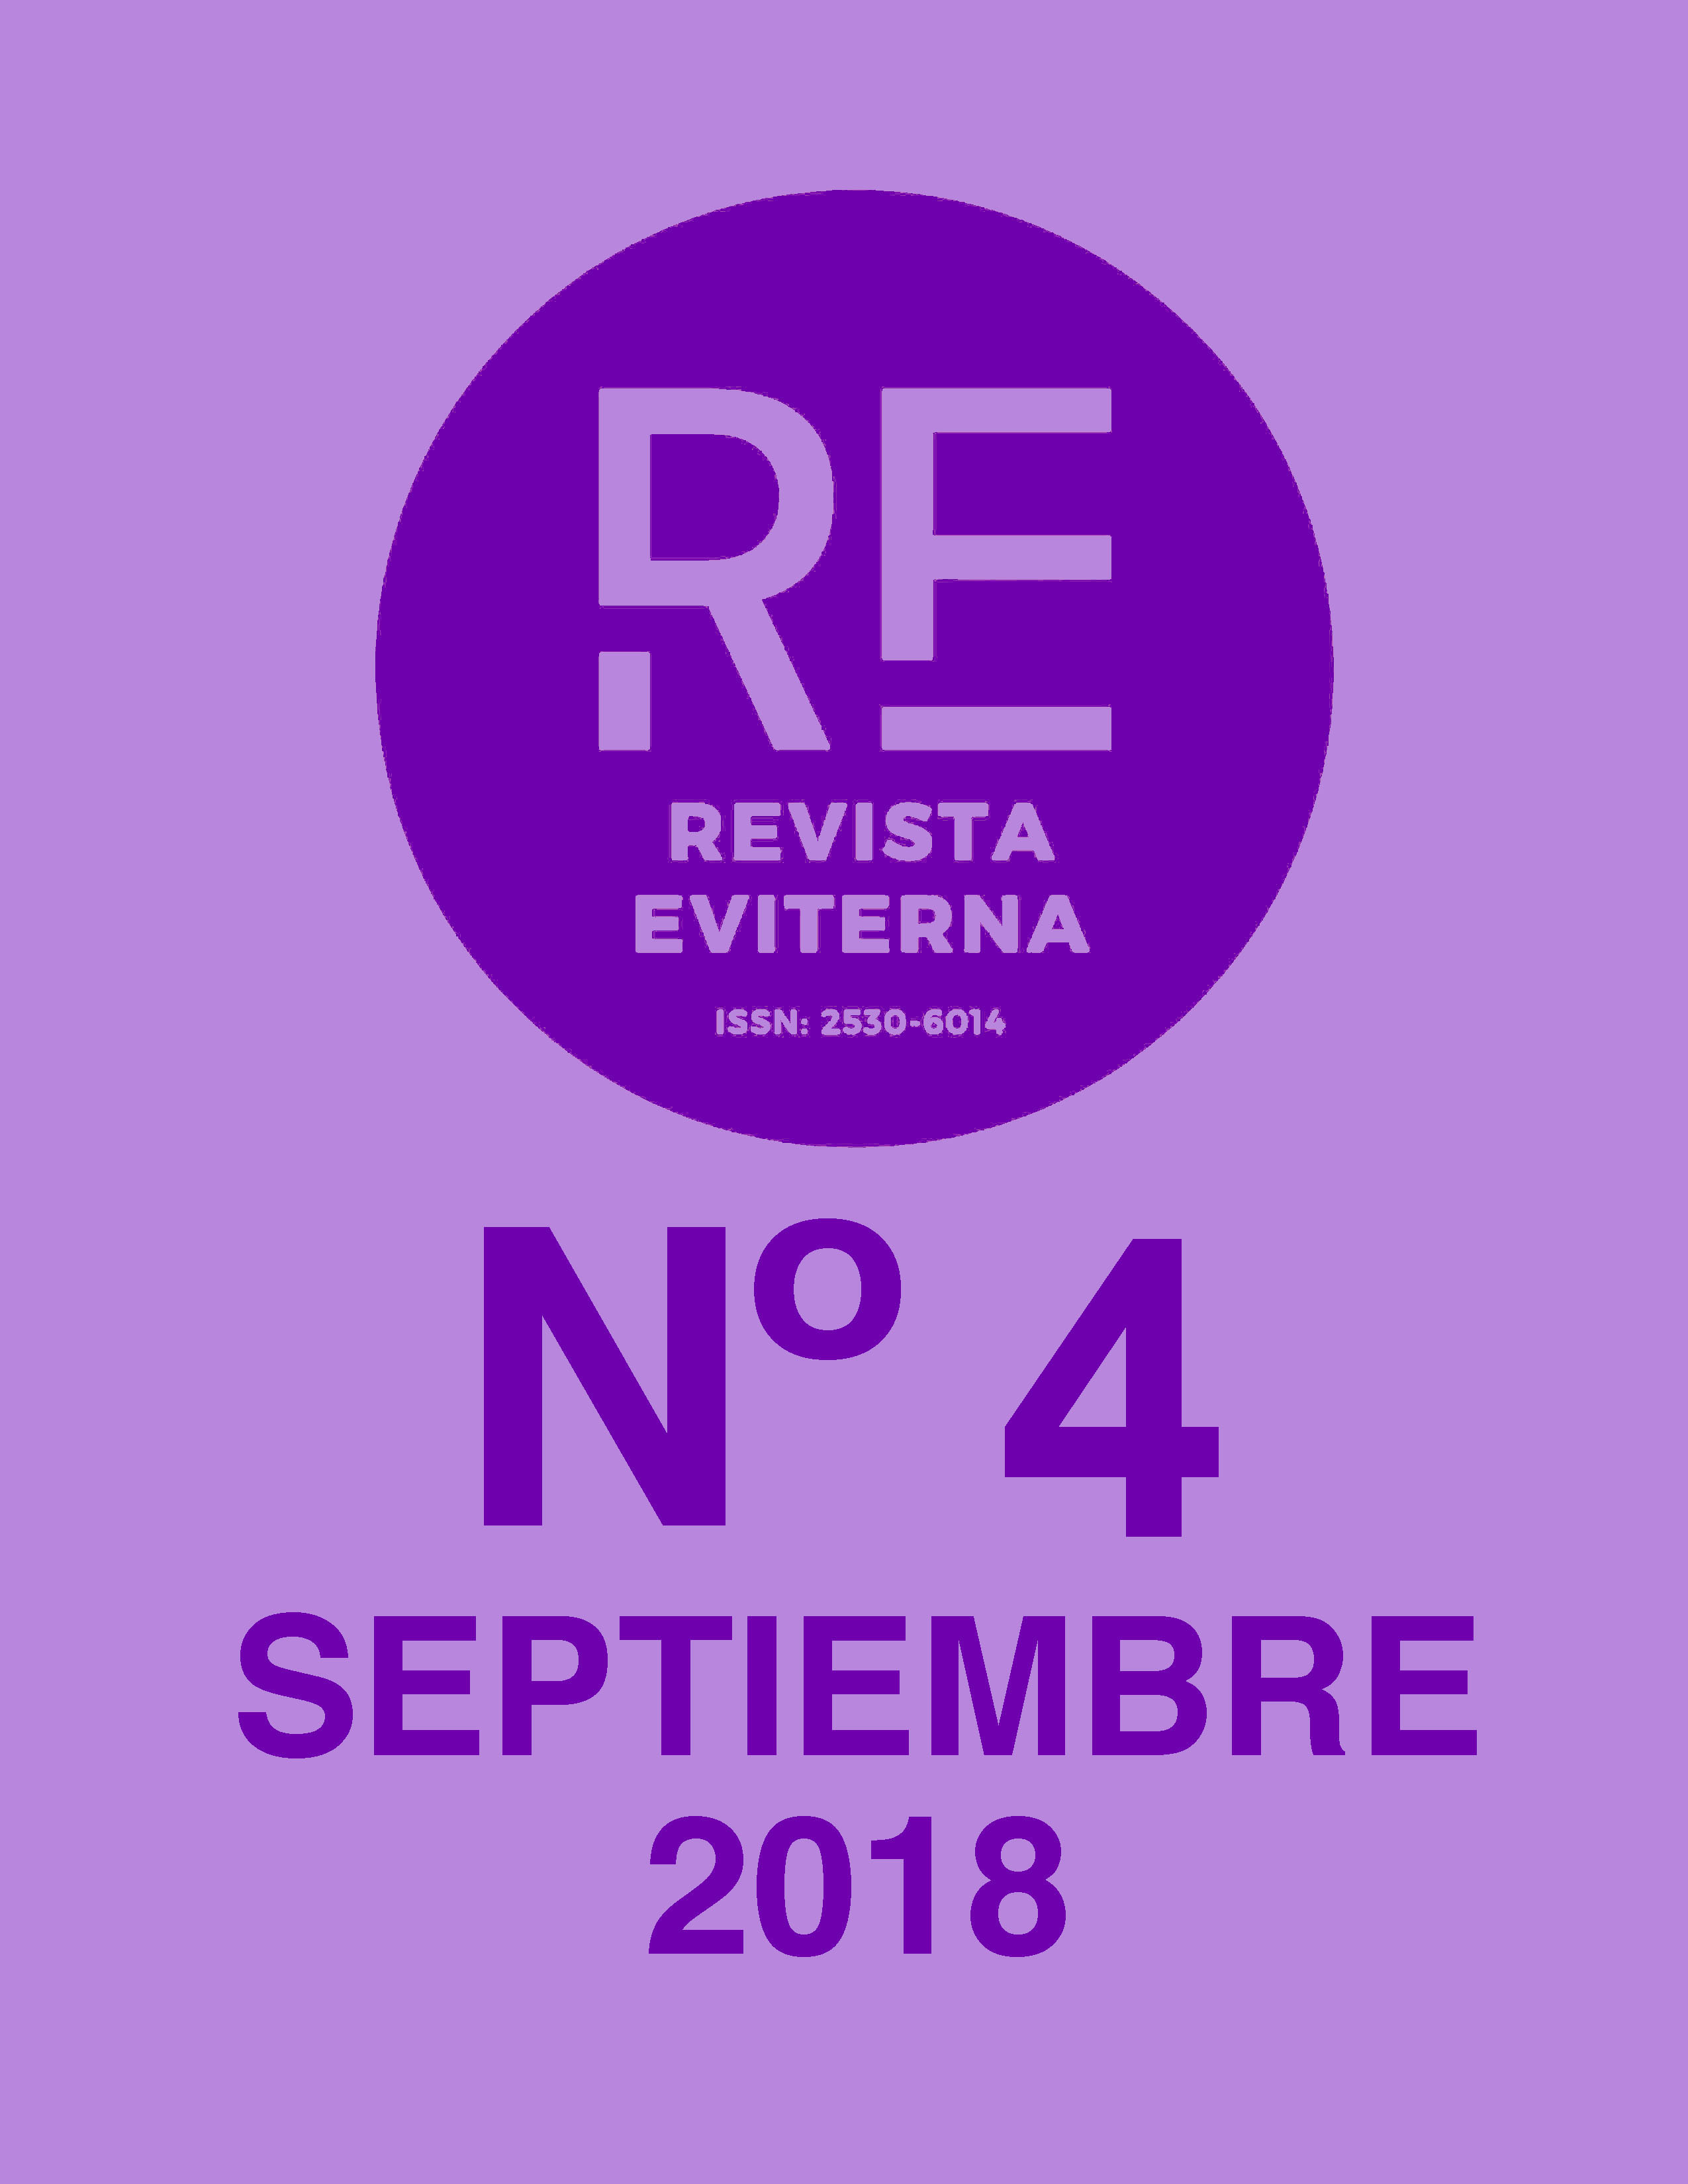 					View No. 4 (2018): Revista Eviterna Nº 4, septiembre 2018
				